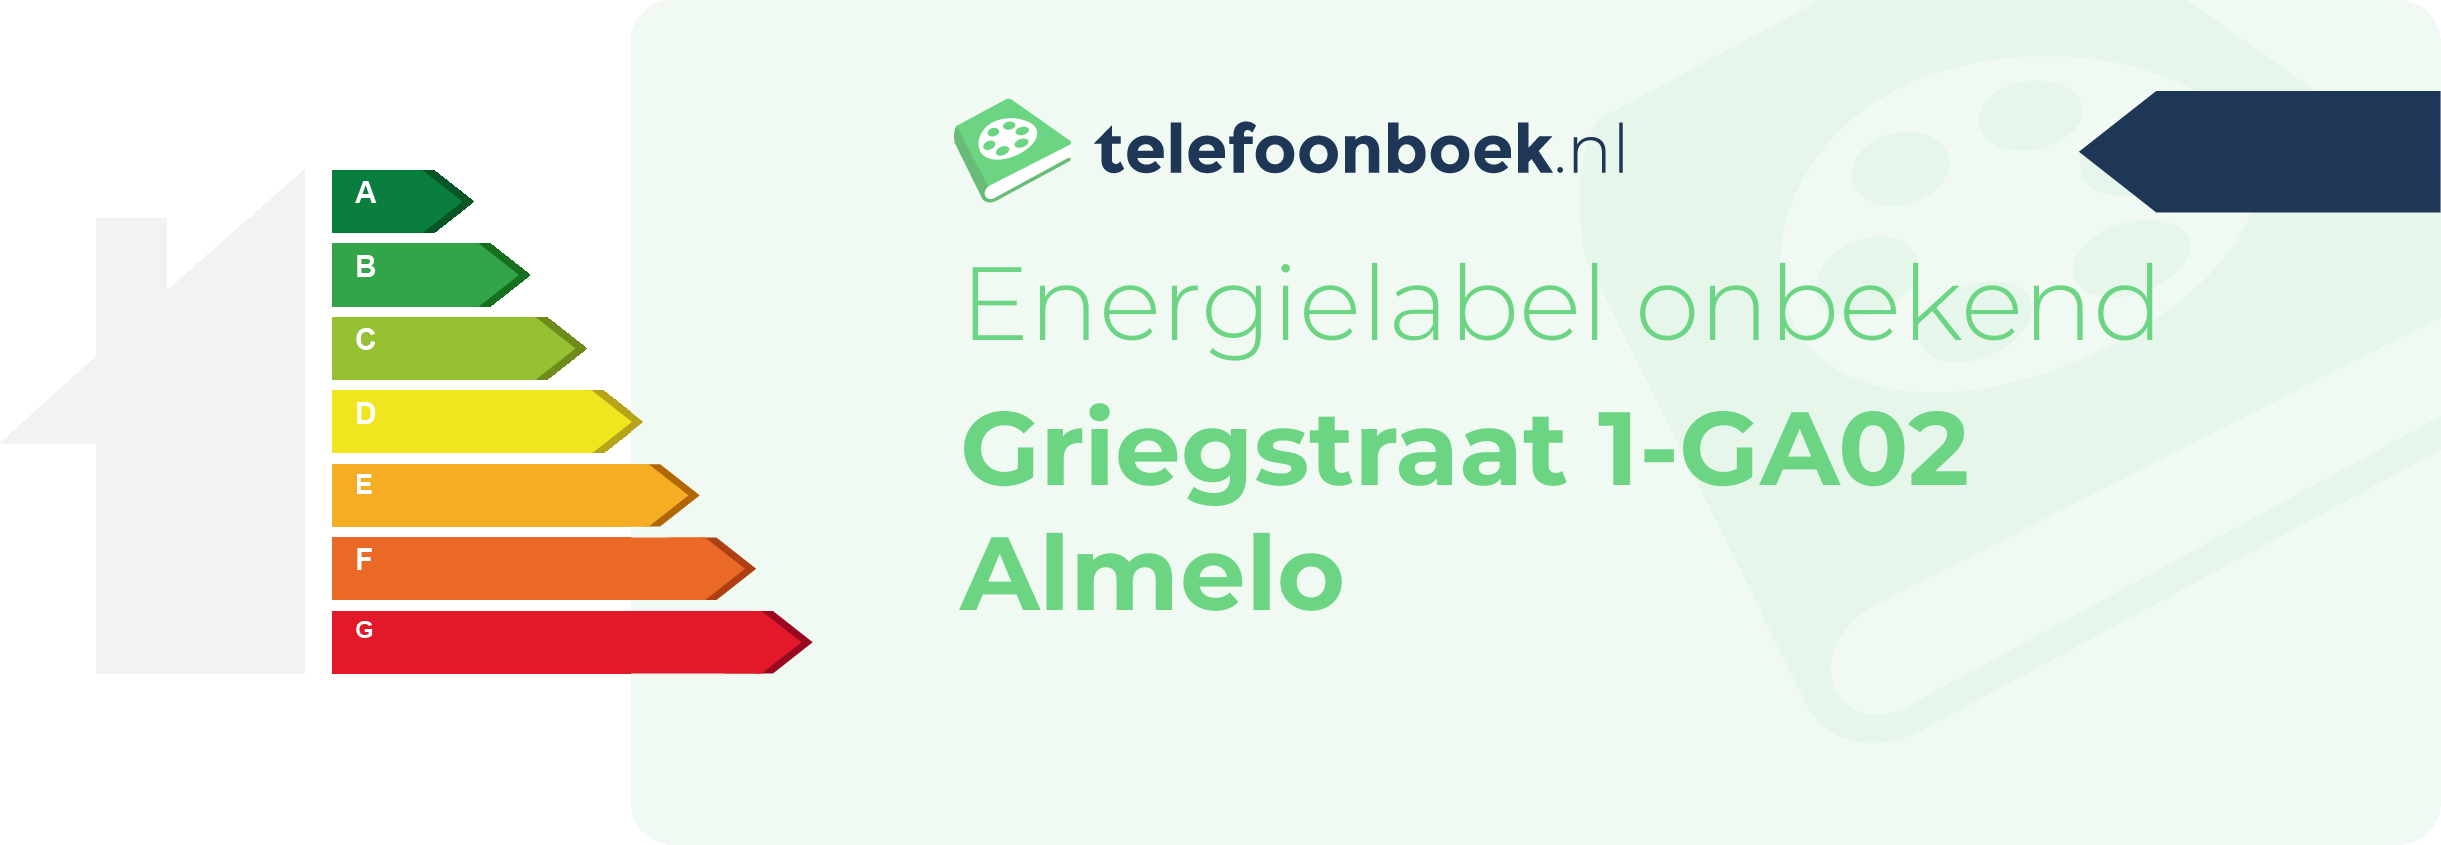 Energielabel Griegstraat 1-GA02 Almelo